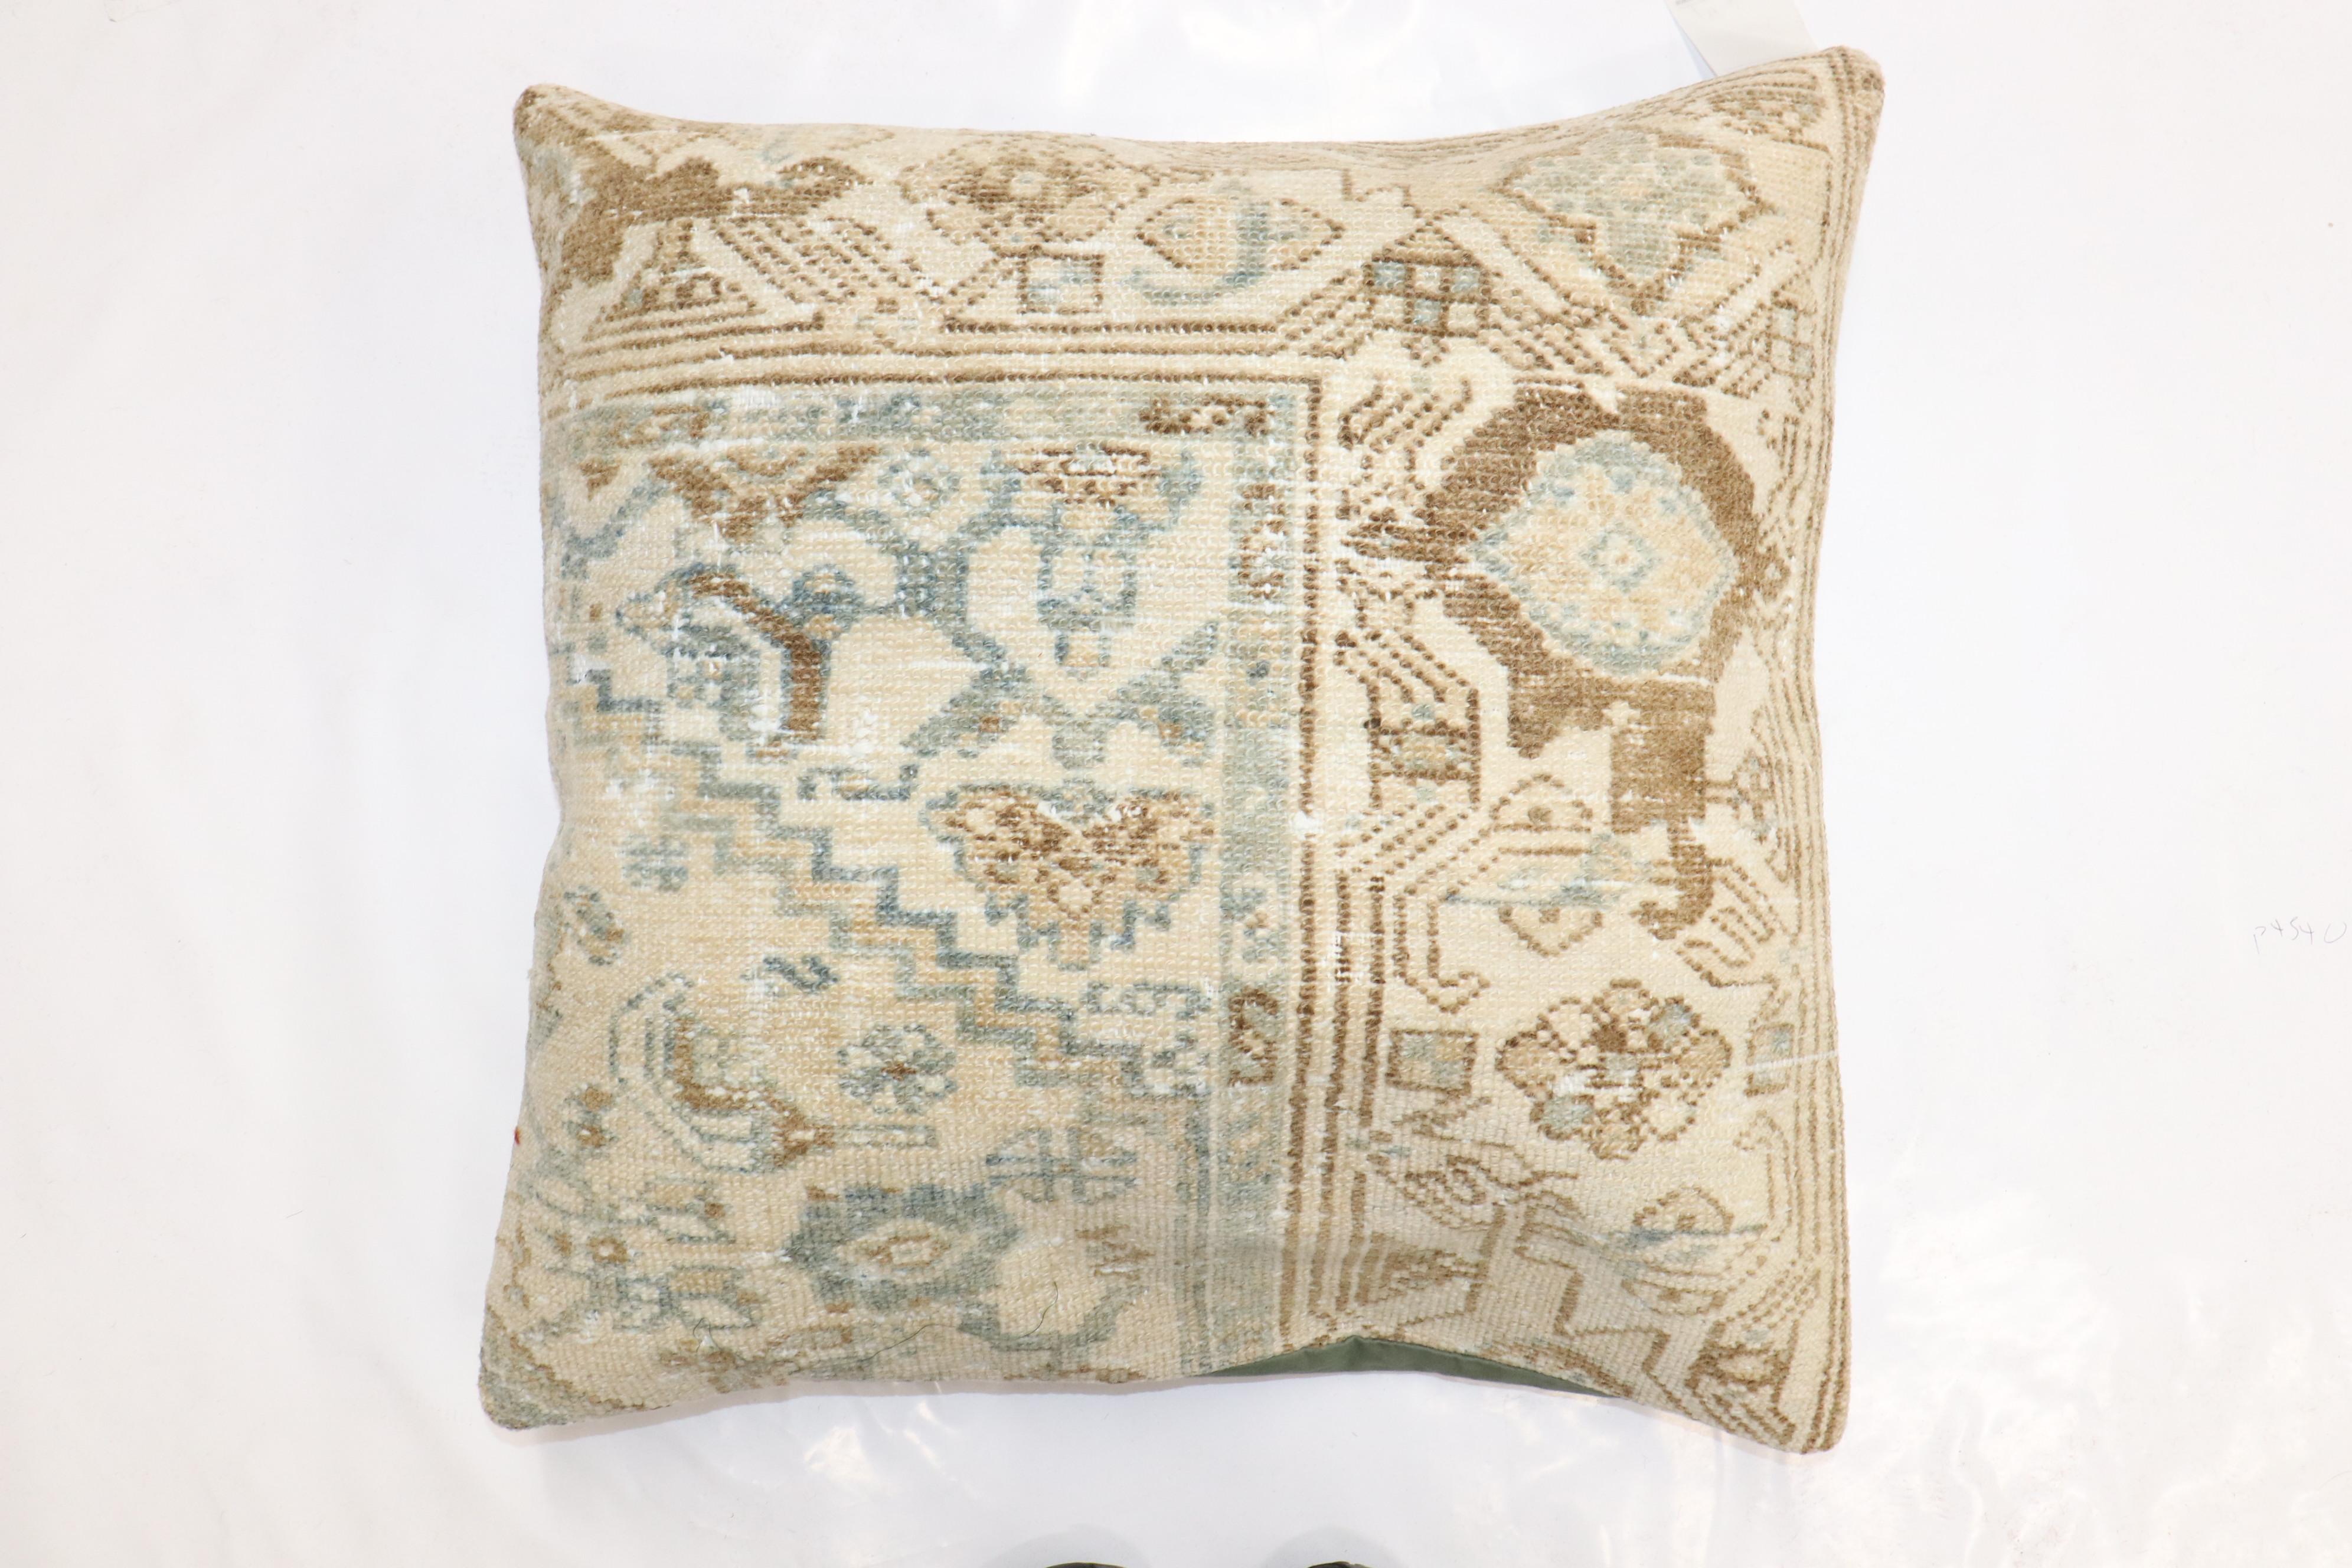 Kissen aus einem antiken persischen Malayer-Teppich in Braun- und Grüntönen.

23'' x 23''